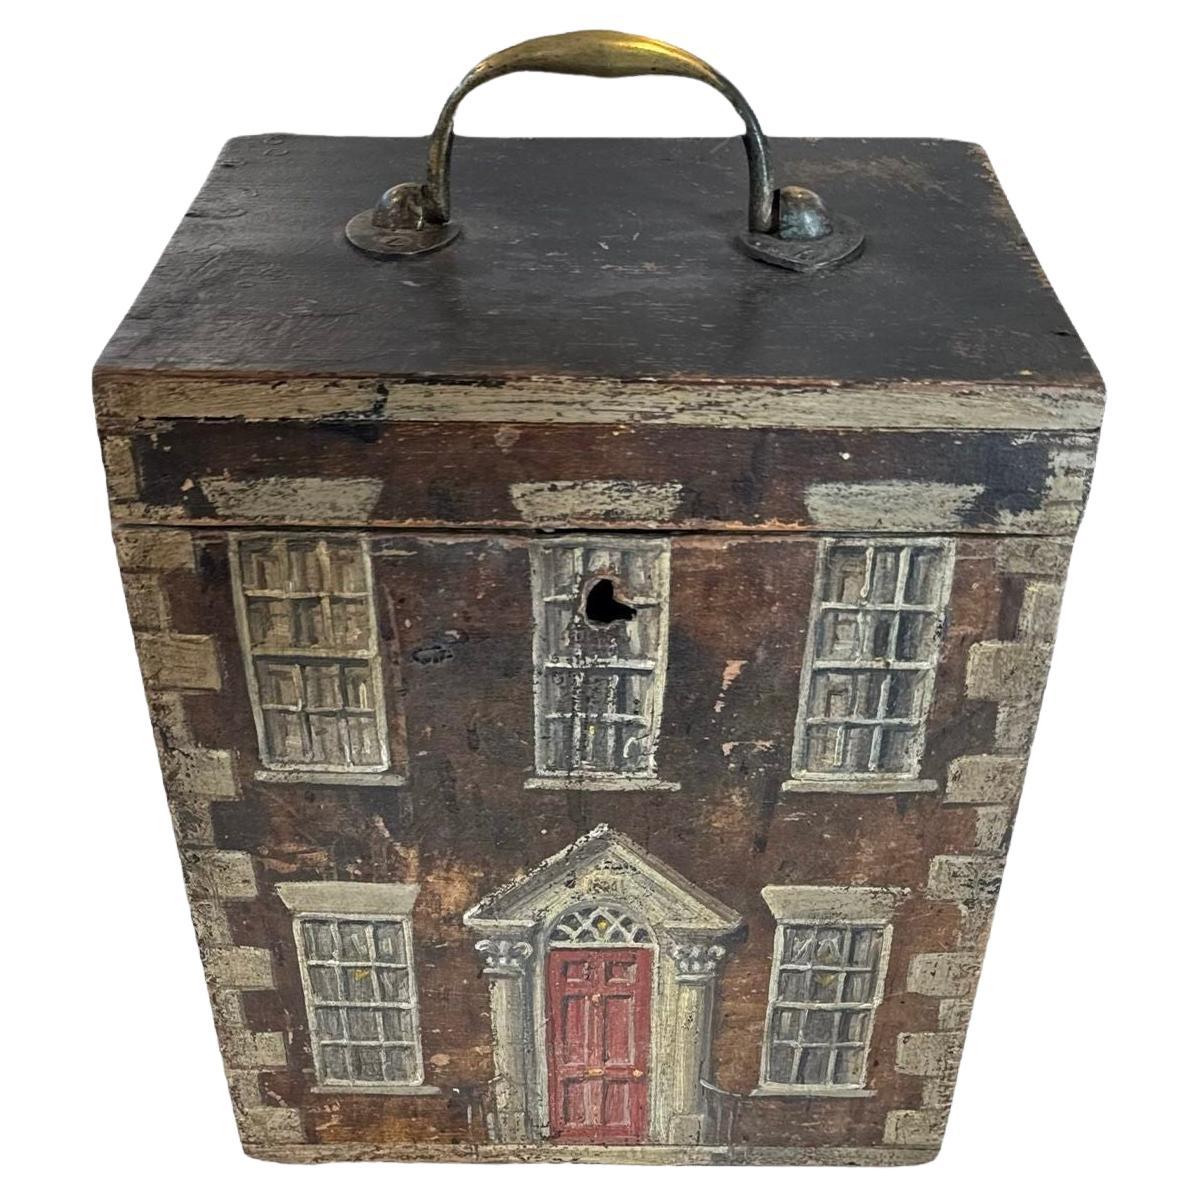 Boîte peinte anglaise ressemblant à une maison du début de la période Georgian House, 19e siècle